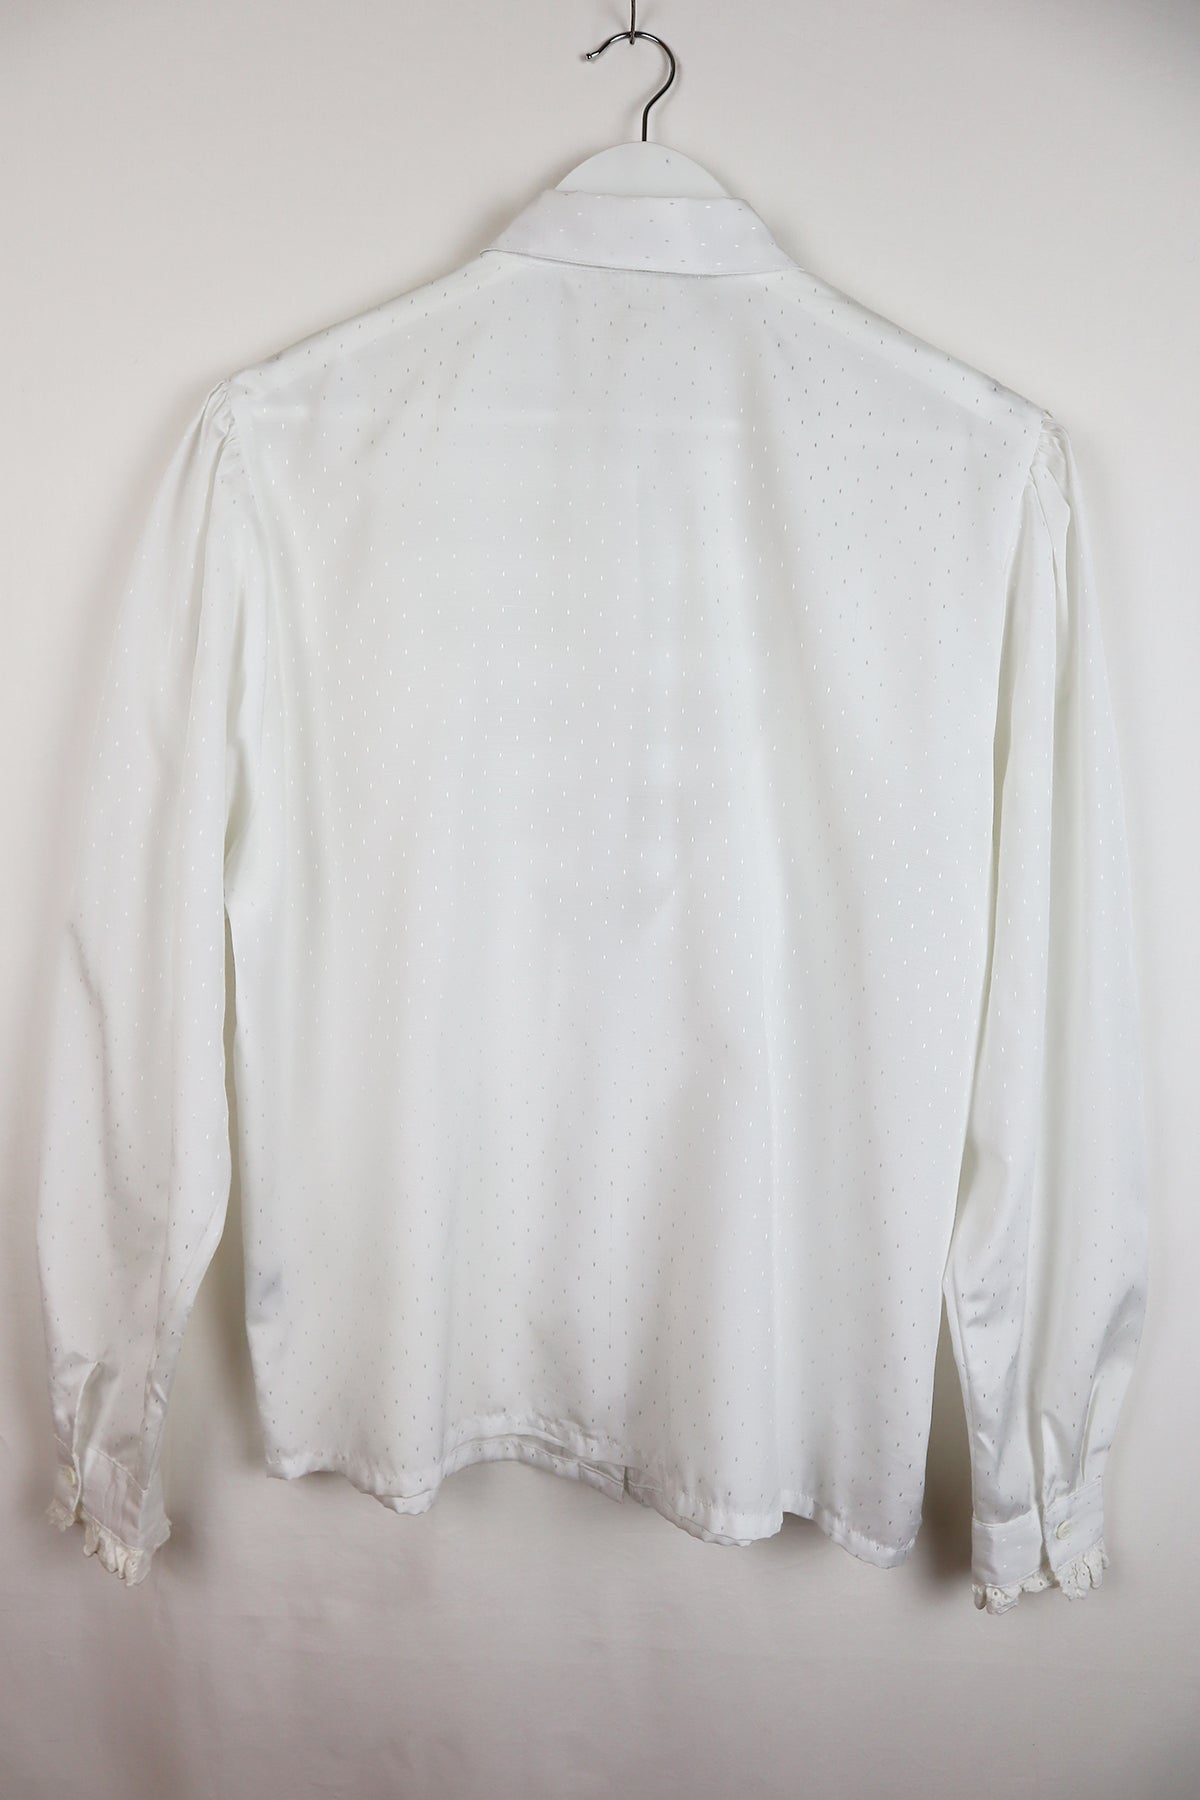 Bluse Vintage Weiß Rüschen ( Gr. M )